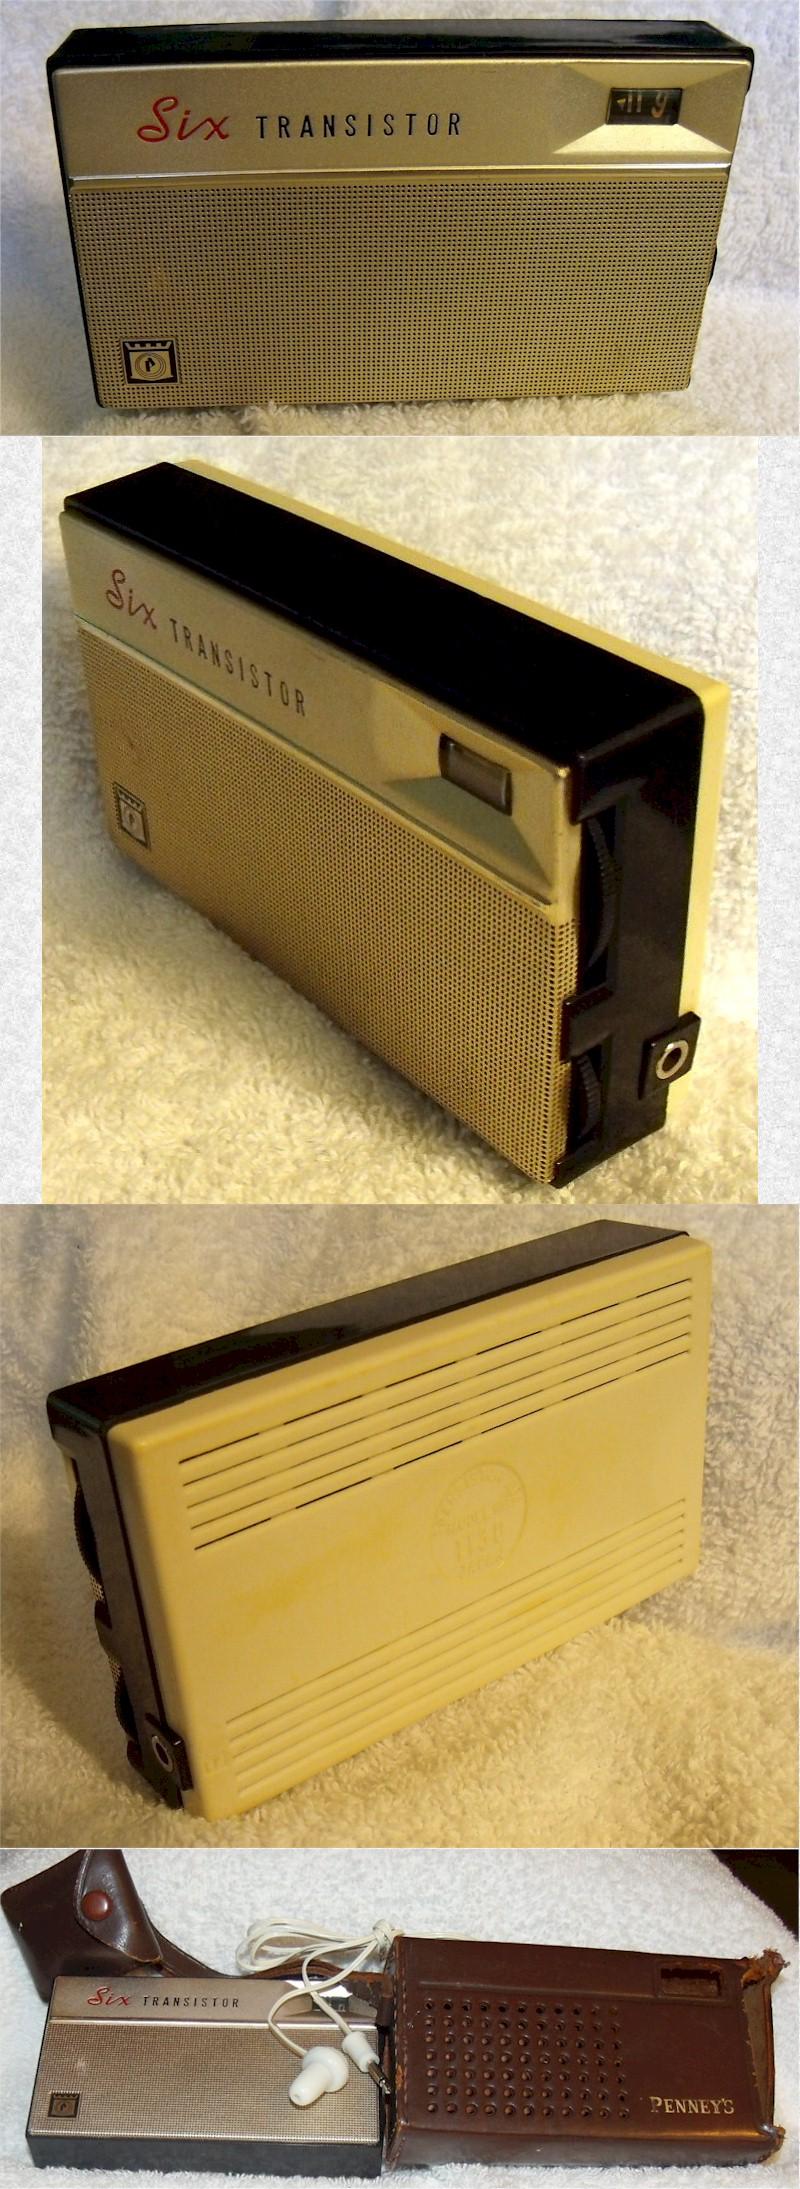 J.C. Penney 1130 Pocket Transistor (1962)